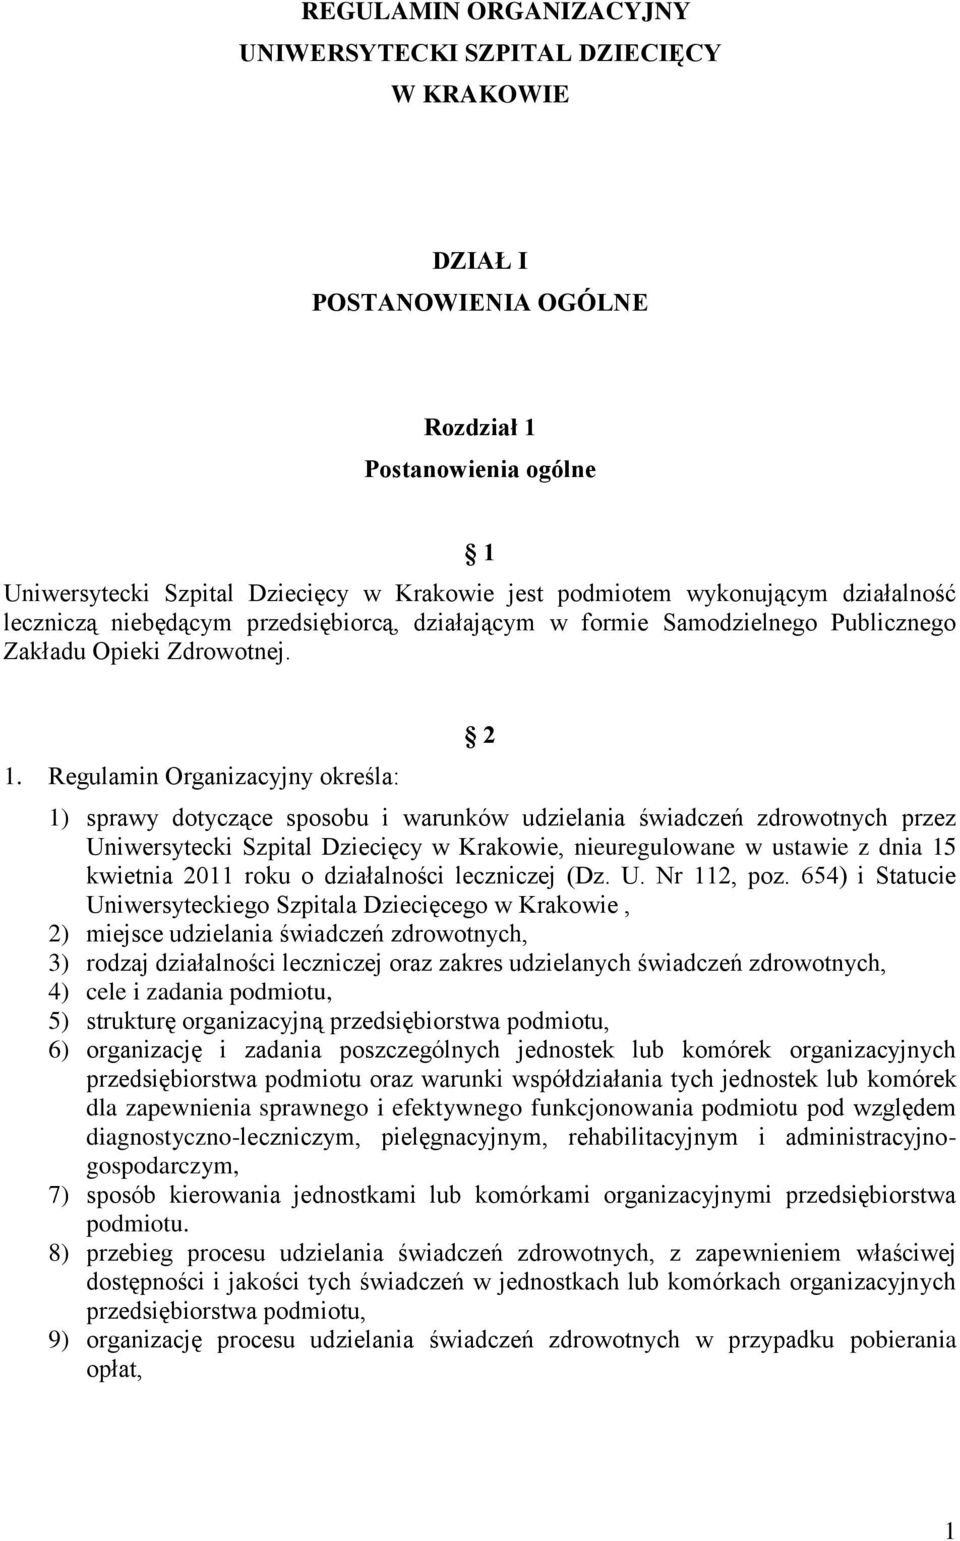 Regulamin Organizacyjny określa: 2 1) sprawy dotyczące sposobu i warunków udzielania świadczeń zdrowotnych przez Uniwersytecki Szpital Dziecięcy w Krakowie, nieuregulowane w ustawie z dnia 15